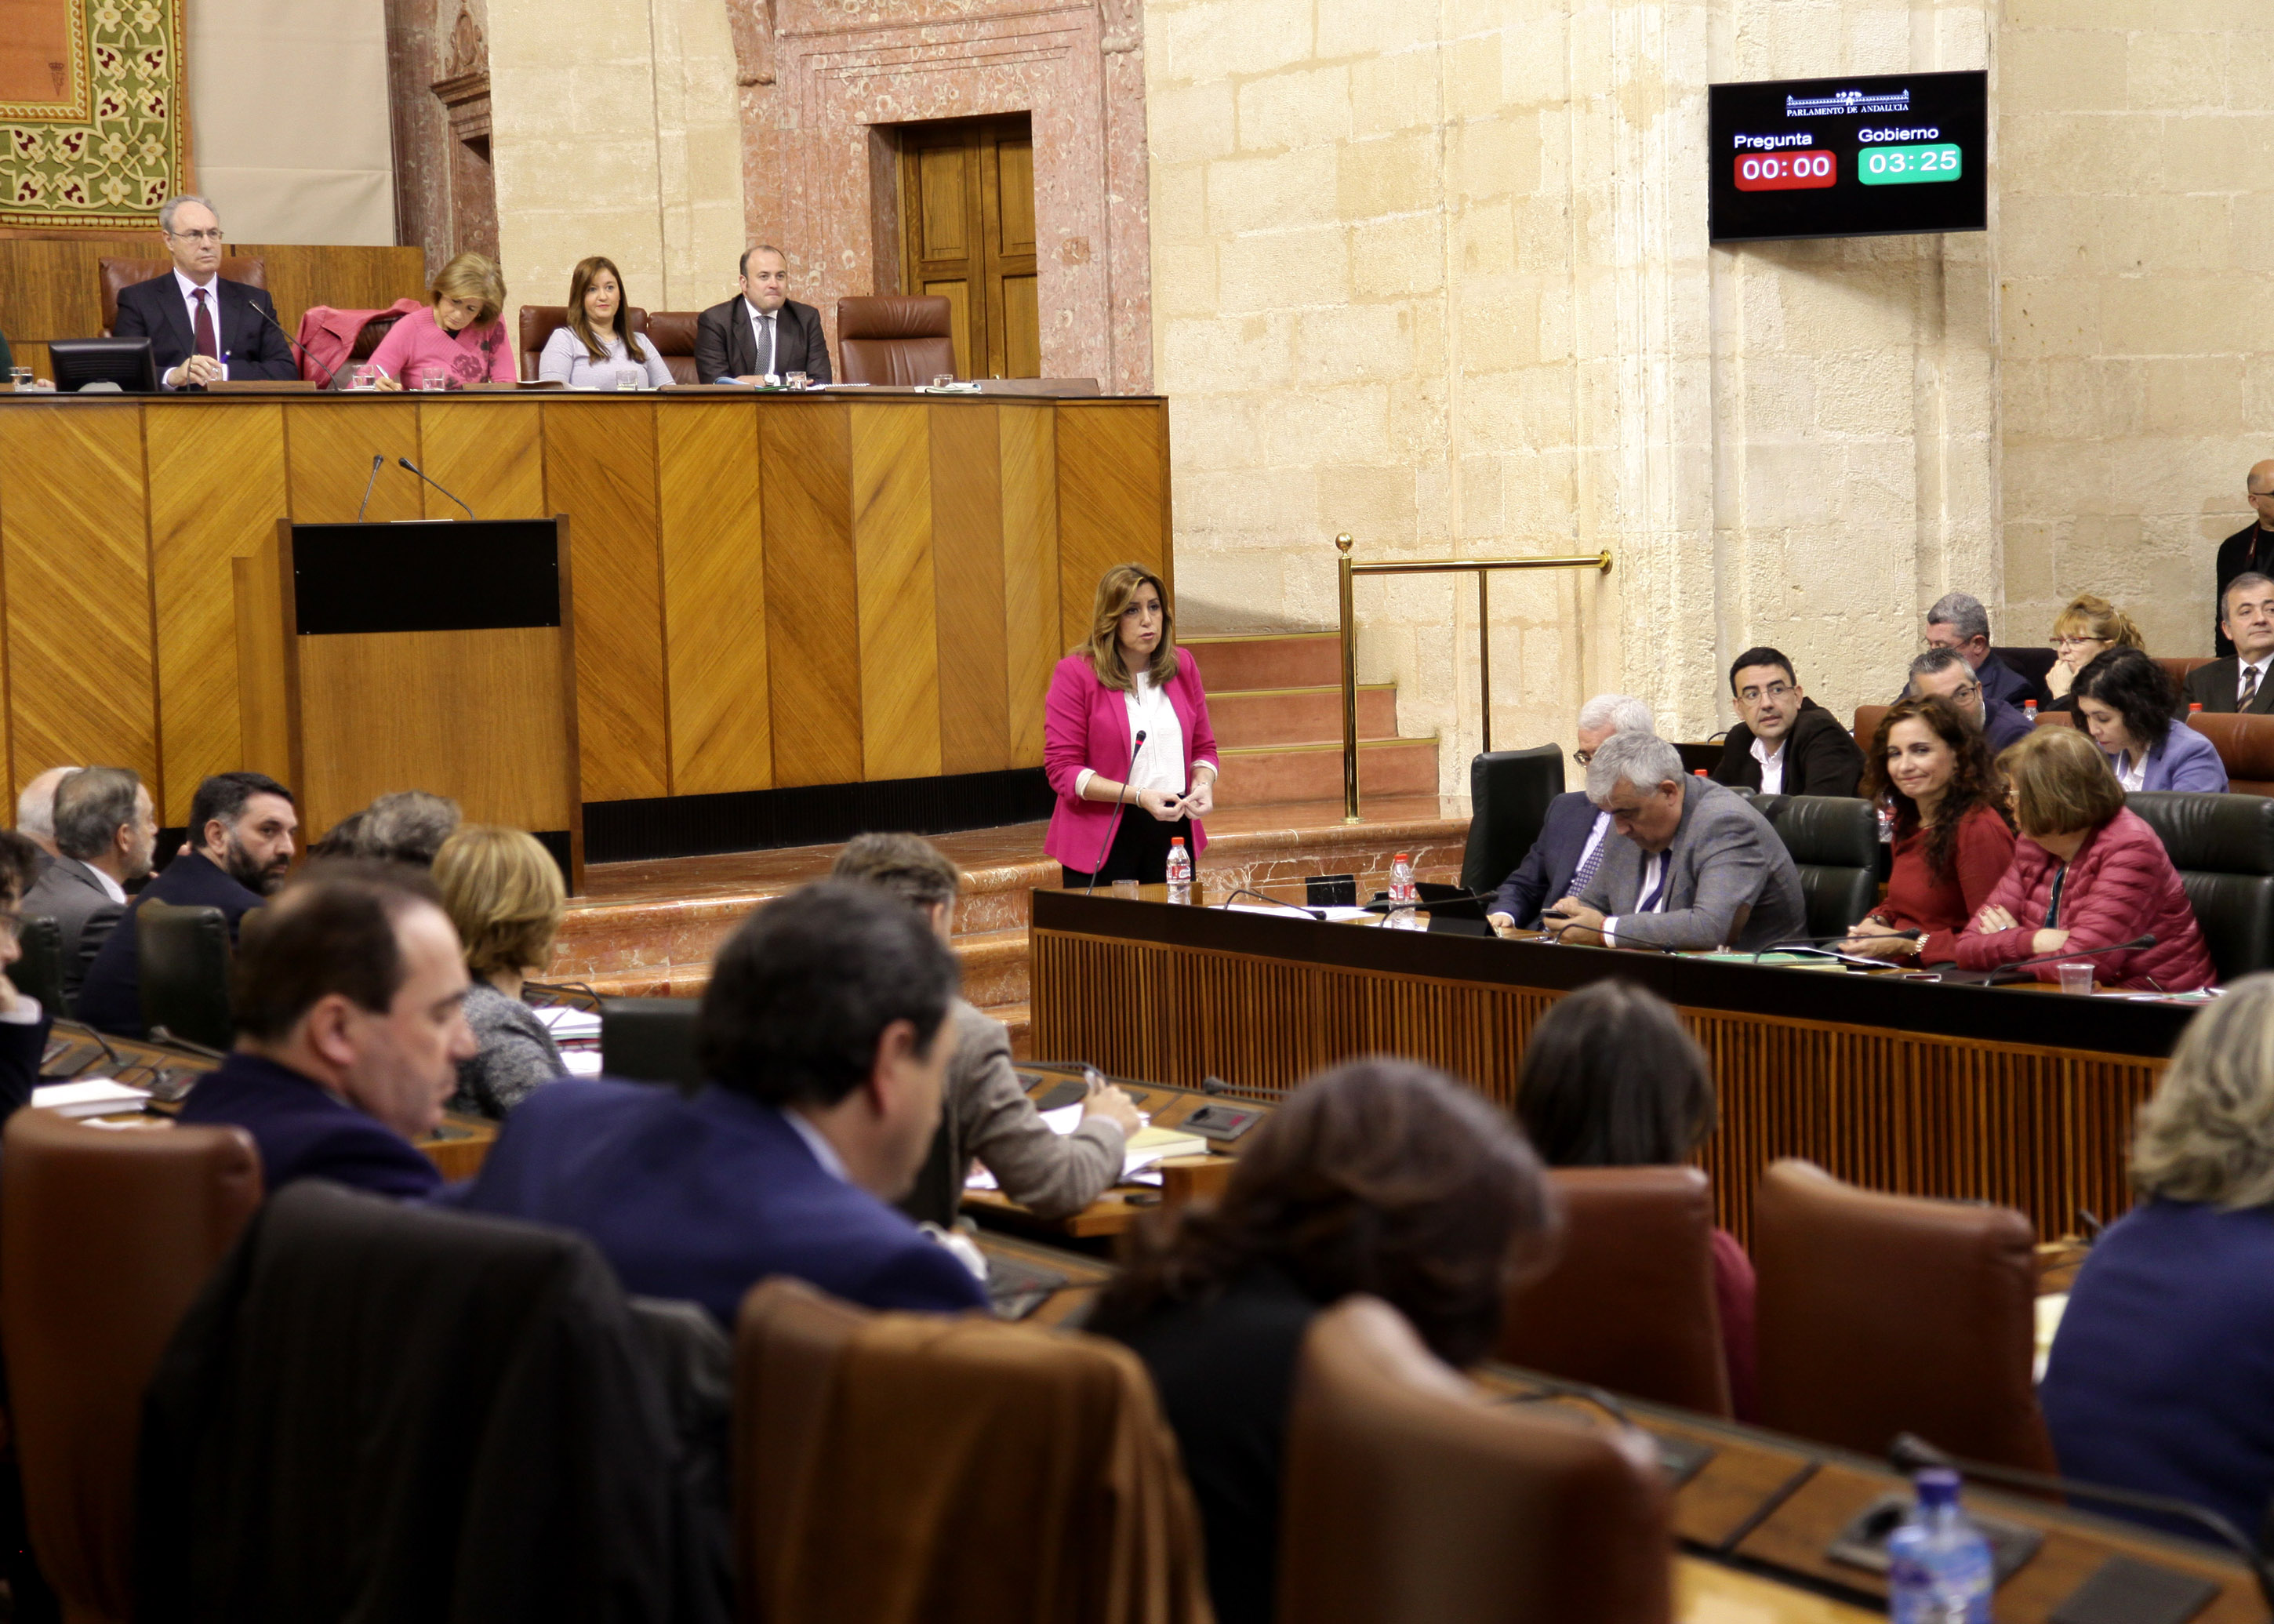 La presidenta de la Junta de Andaluca responde ante el Pleno a una de las preguntas planteadas por la oposicin